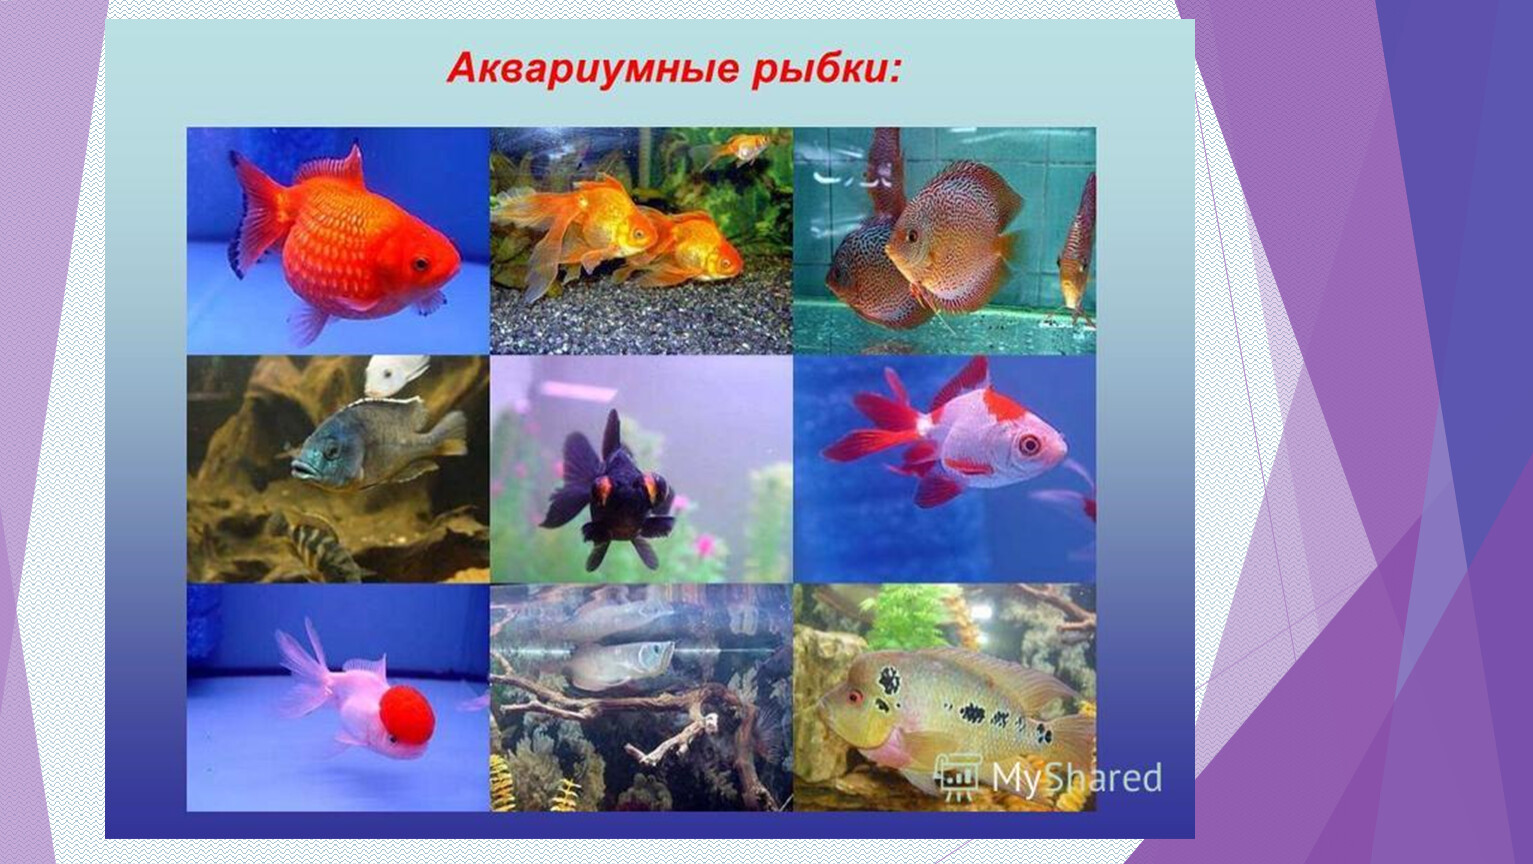 Исследование аквариумных рыбок какая наука. Аквариумные рыбки для дошкольников. Рыбки для аквариума для презентации. Тема Пресноводные и аквариумные рыбы. Аквариумные рыбки презентация для дошкольников.